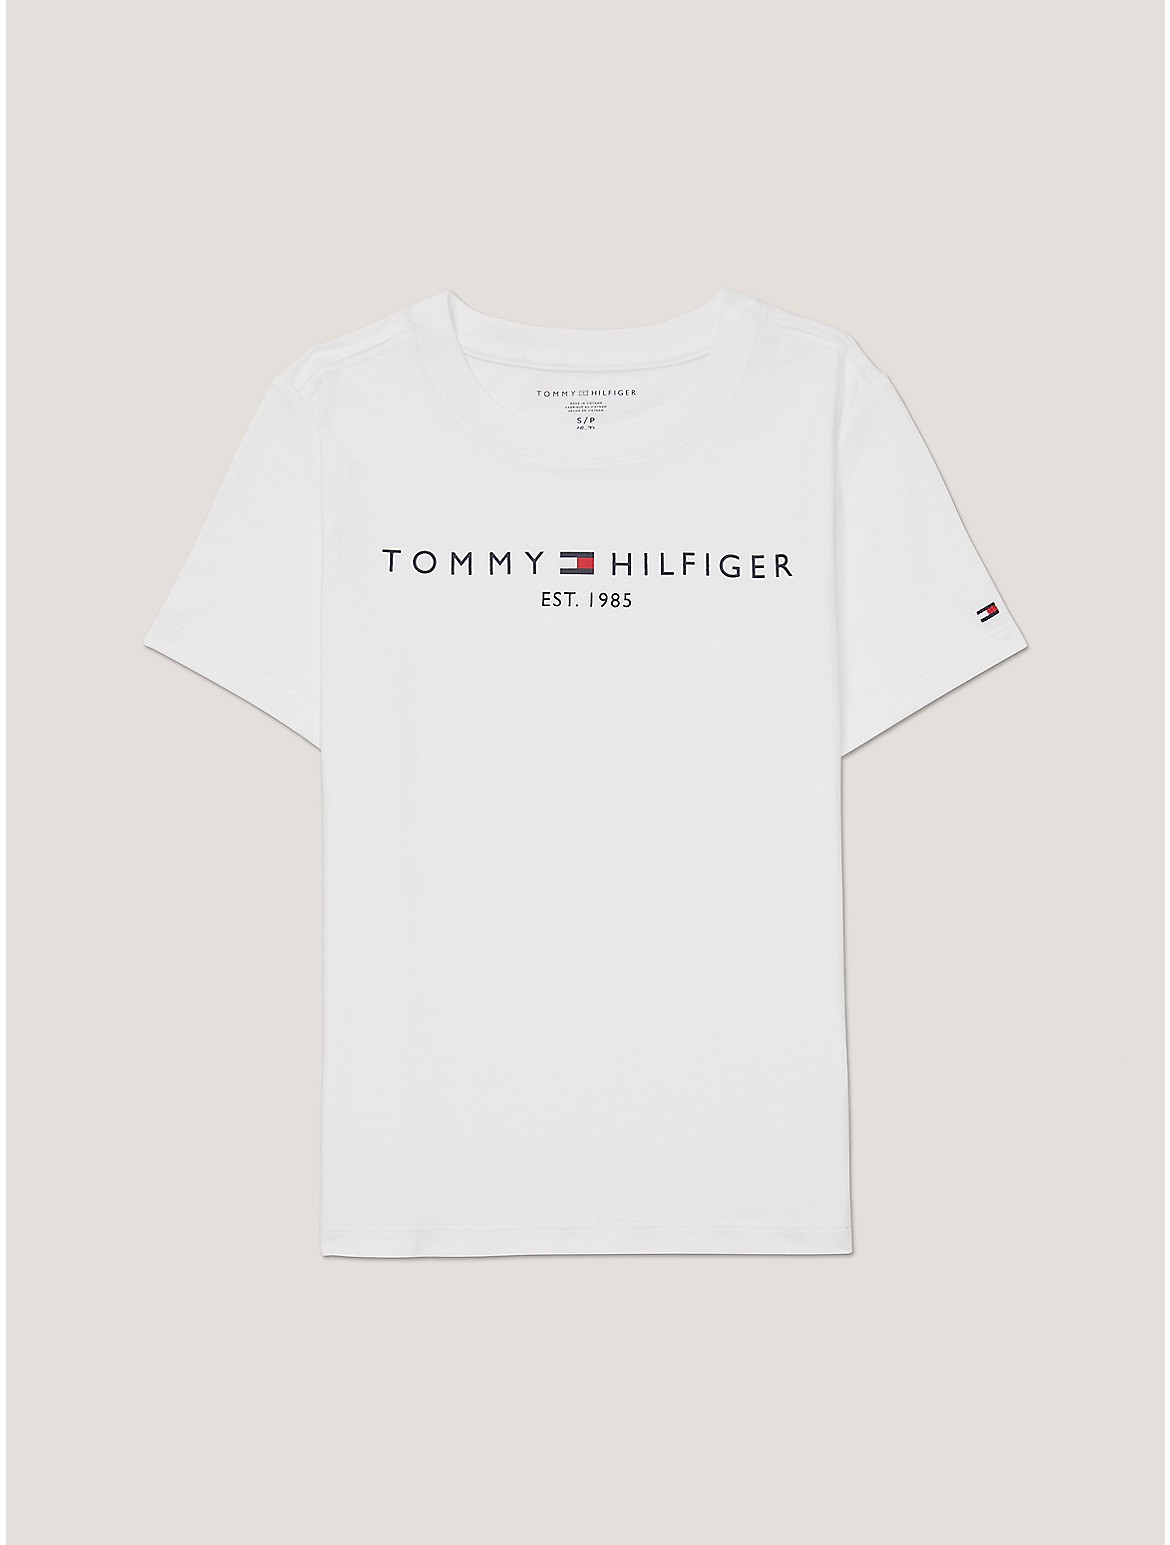 Tommy Hilfiger Boys' Kids' Tommy Logo T-Shirt